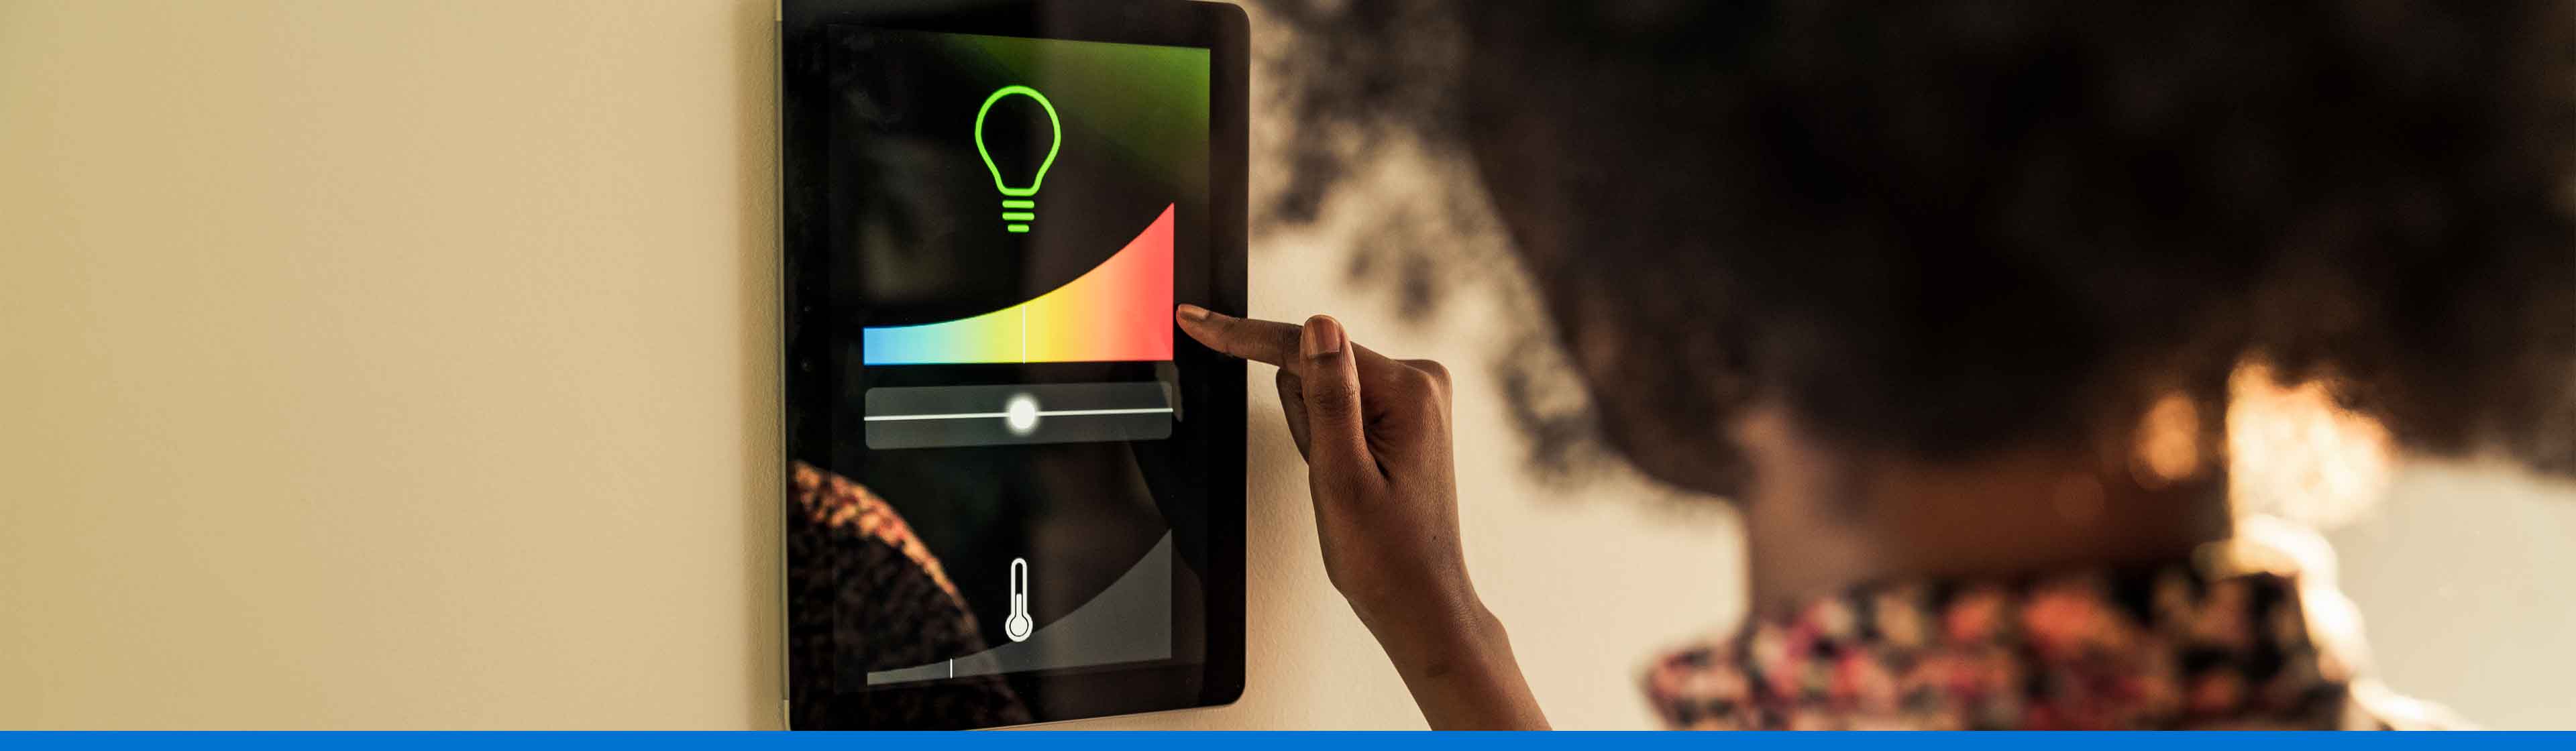 mujer controlando la temperatura y luces de su casa desde una tablet